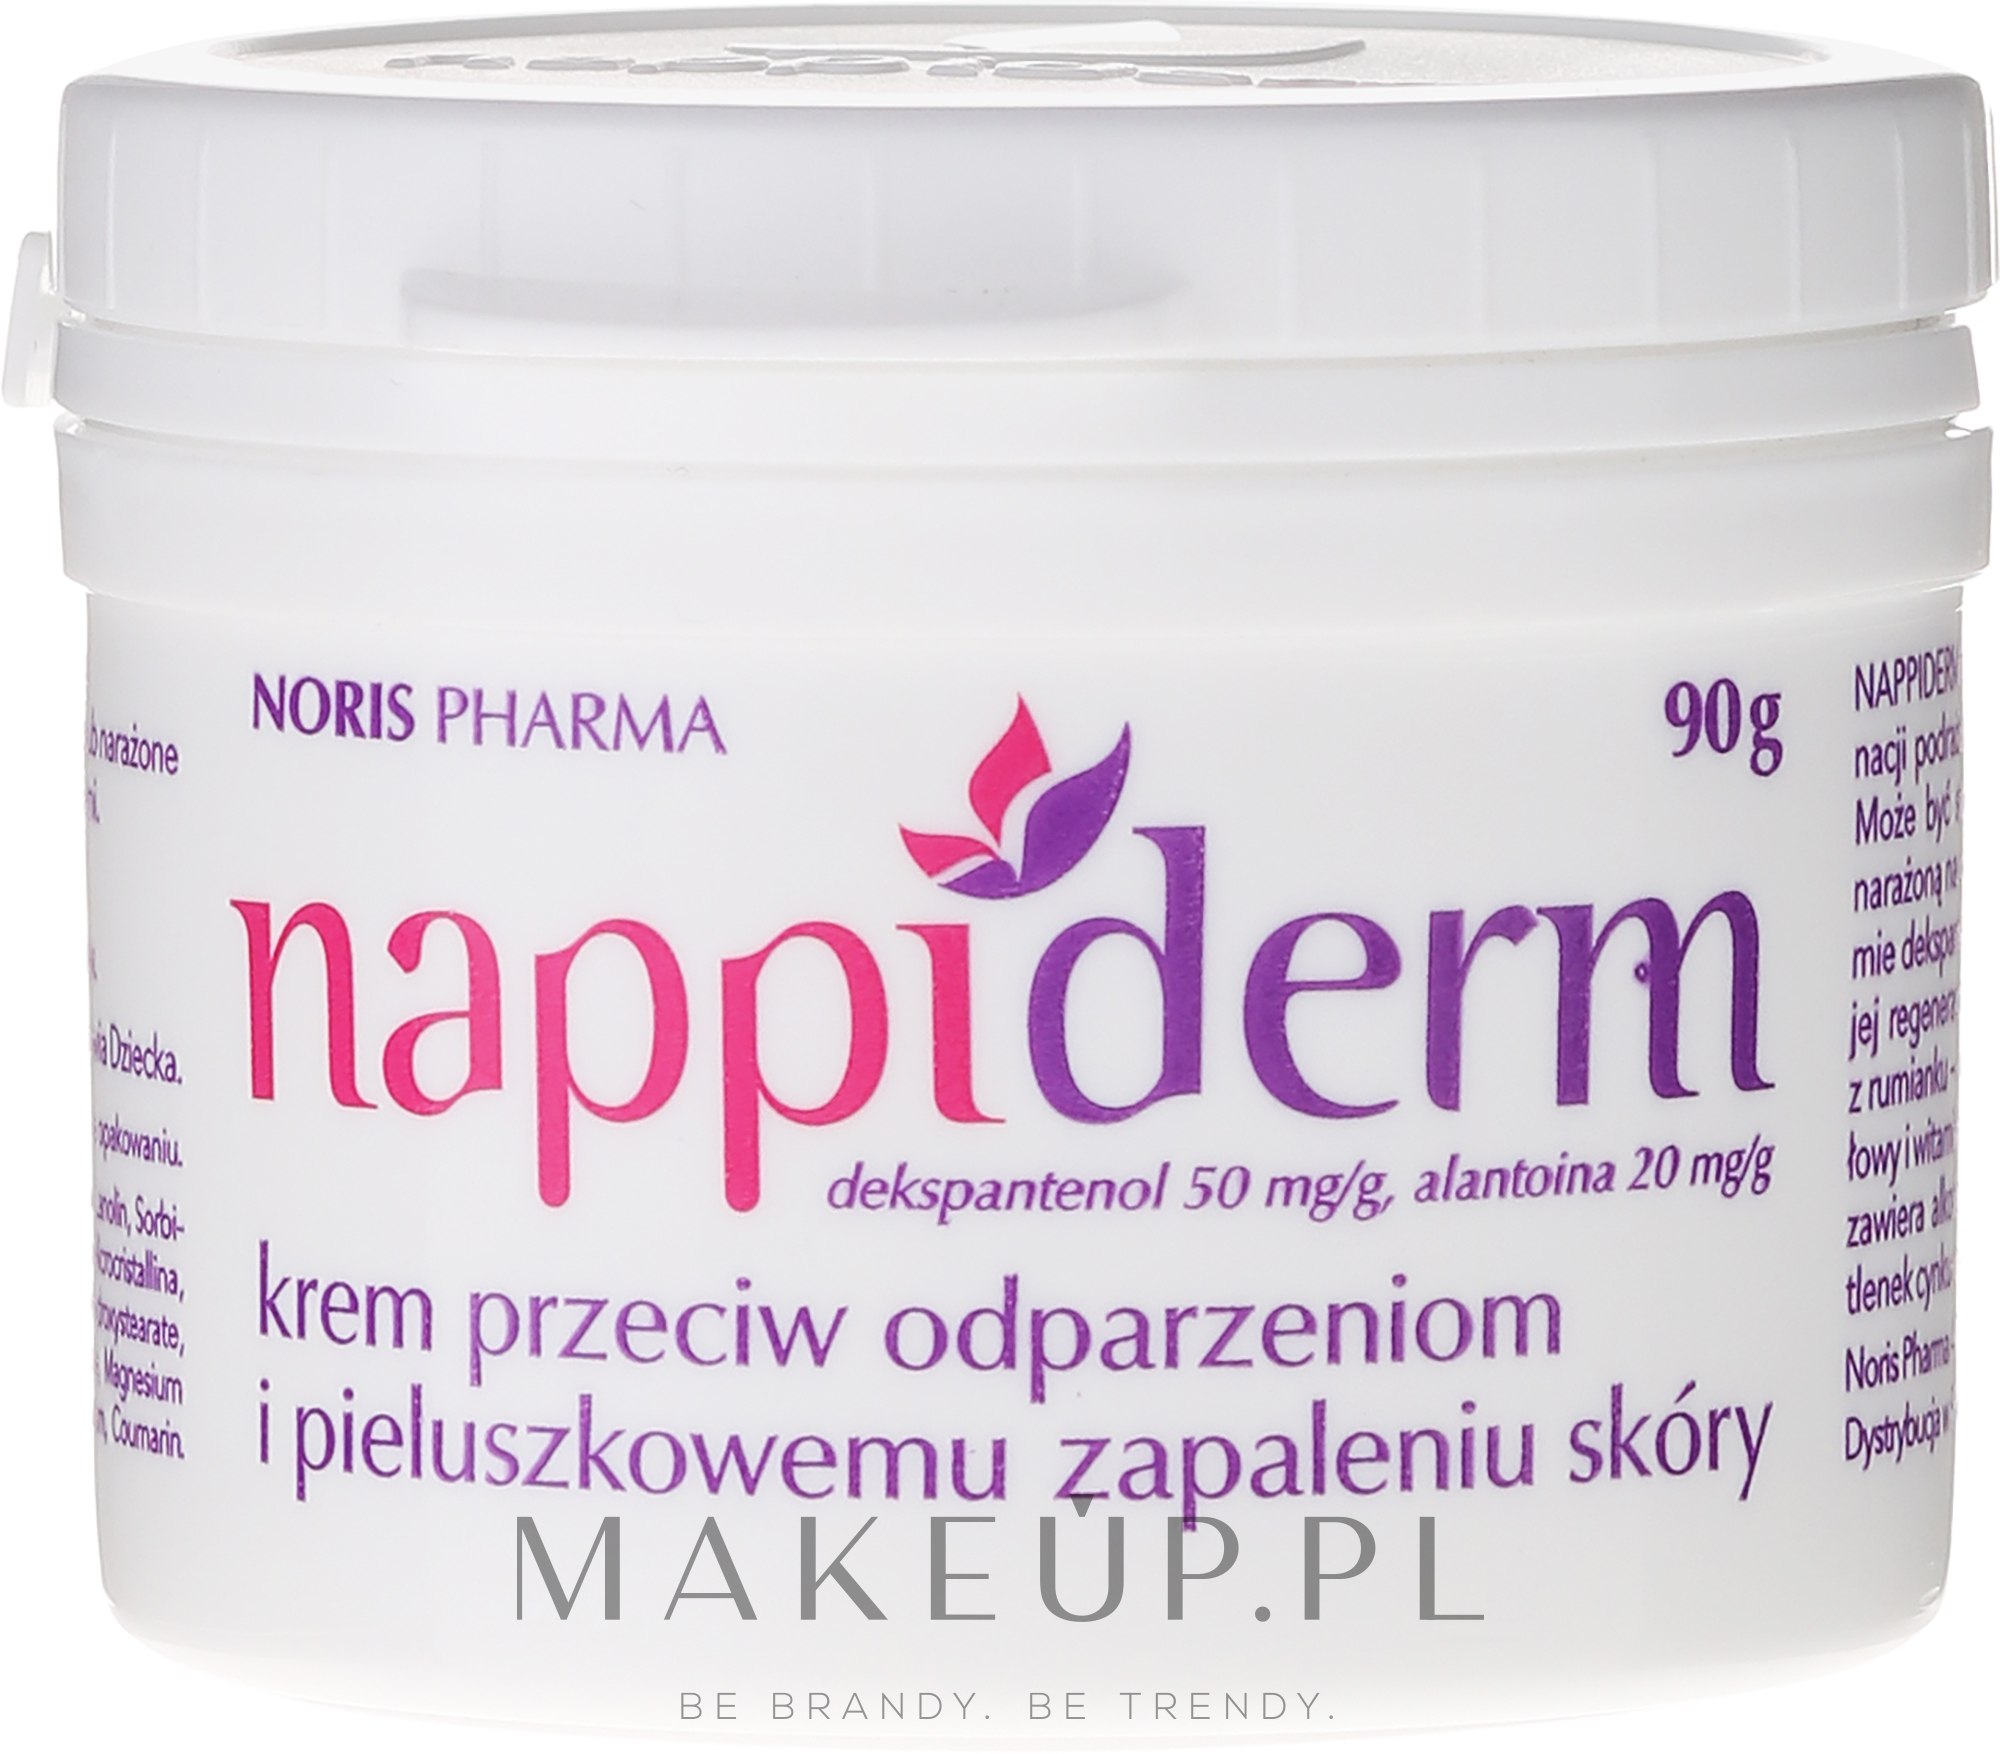 Krem przeciw odparzeniom i pieluszkowemu zapaleniu skóry - Nappiderm — Zdjęcie 90 g